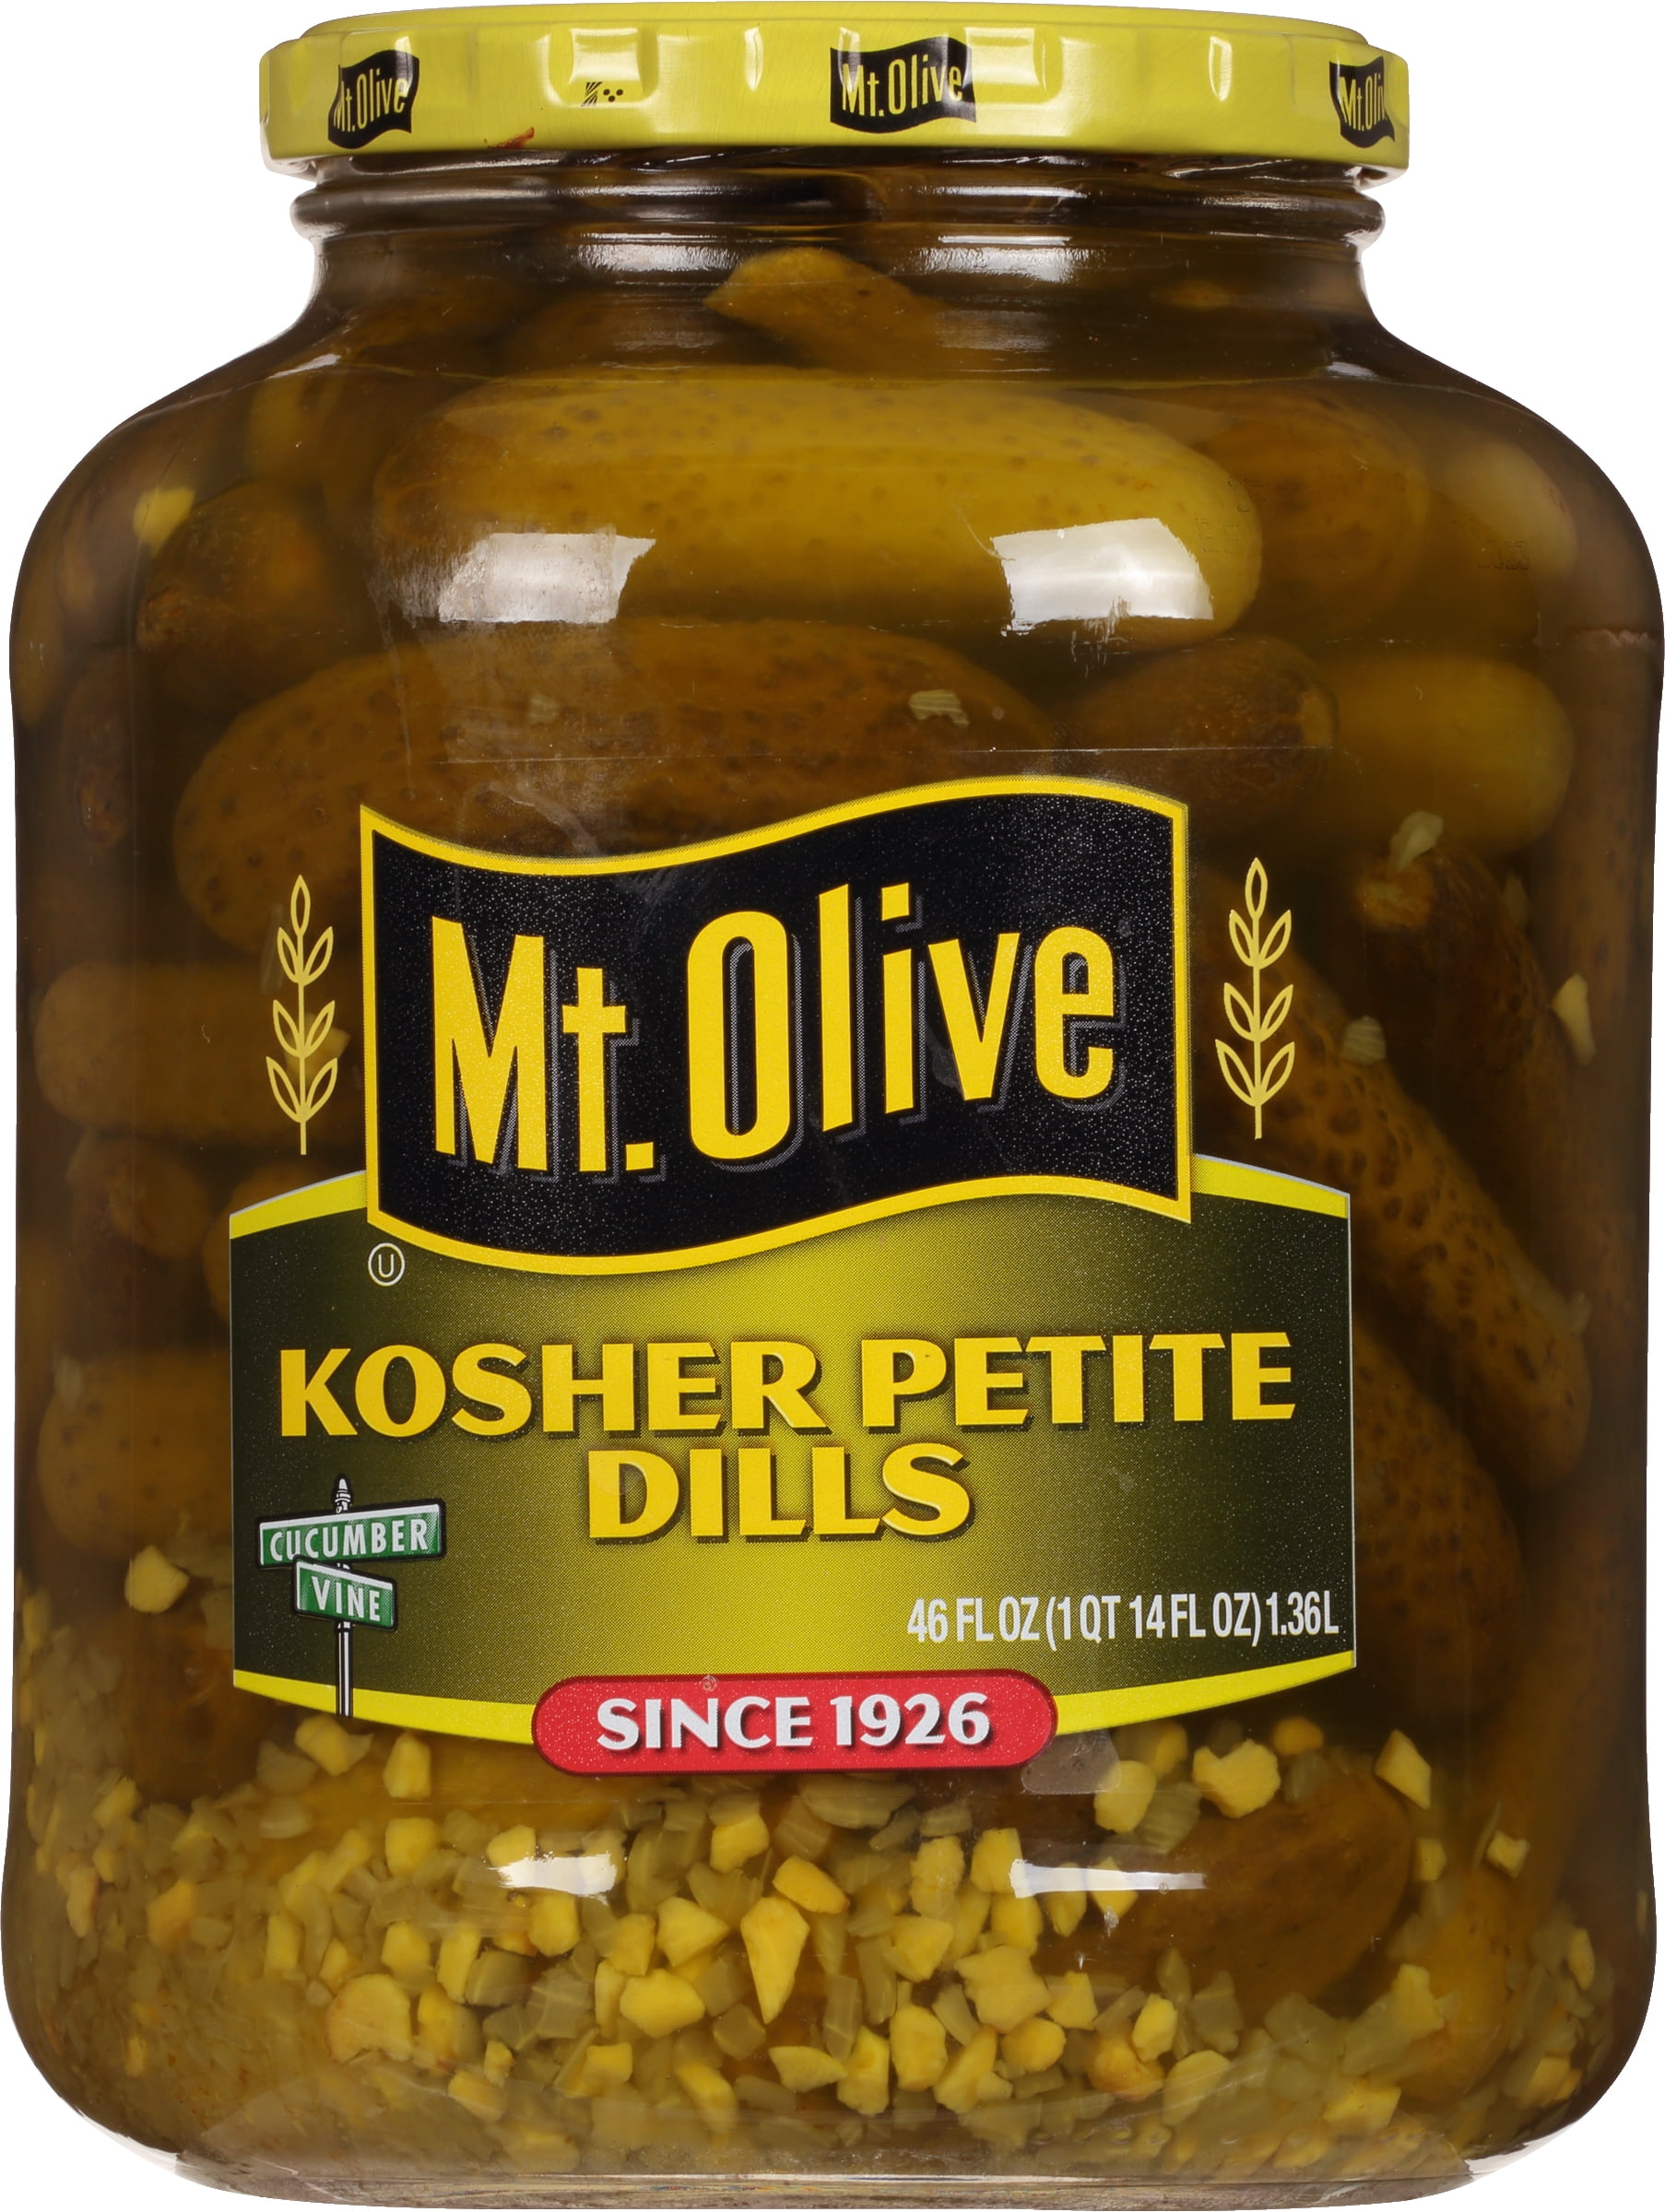 Mt. Olive Kosher Petite Dill Pickles, 46 fl oz Jar